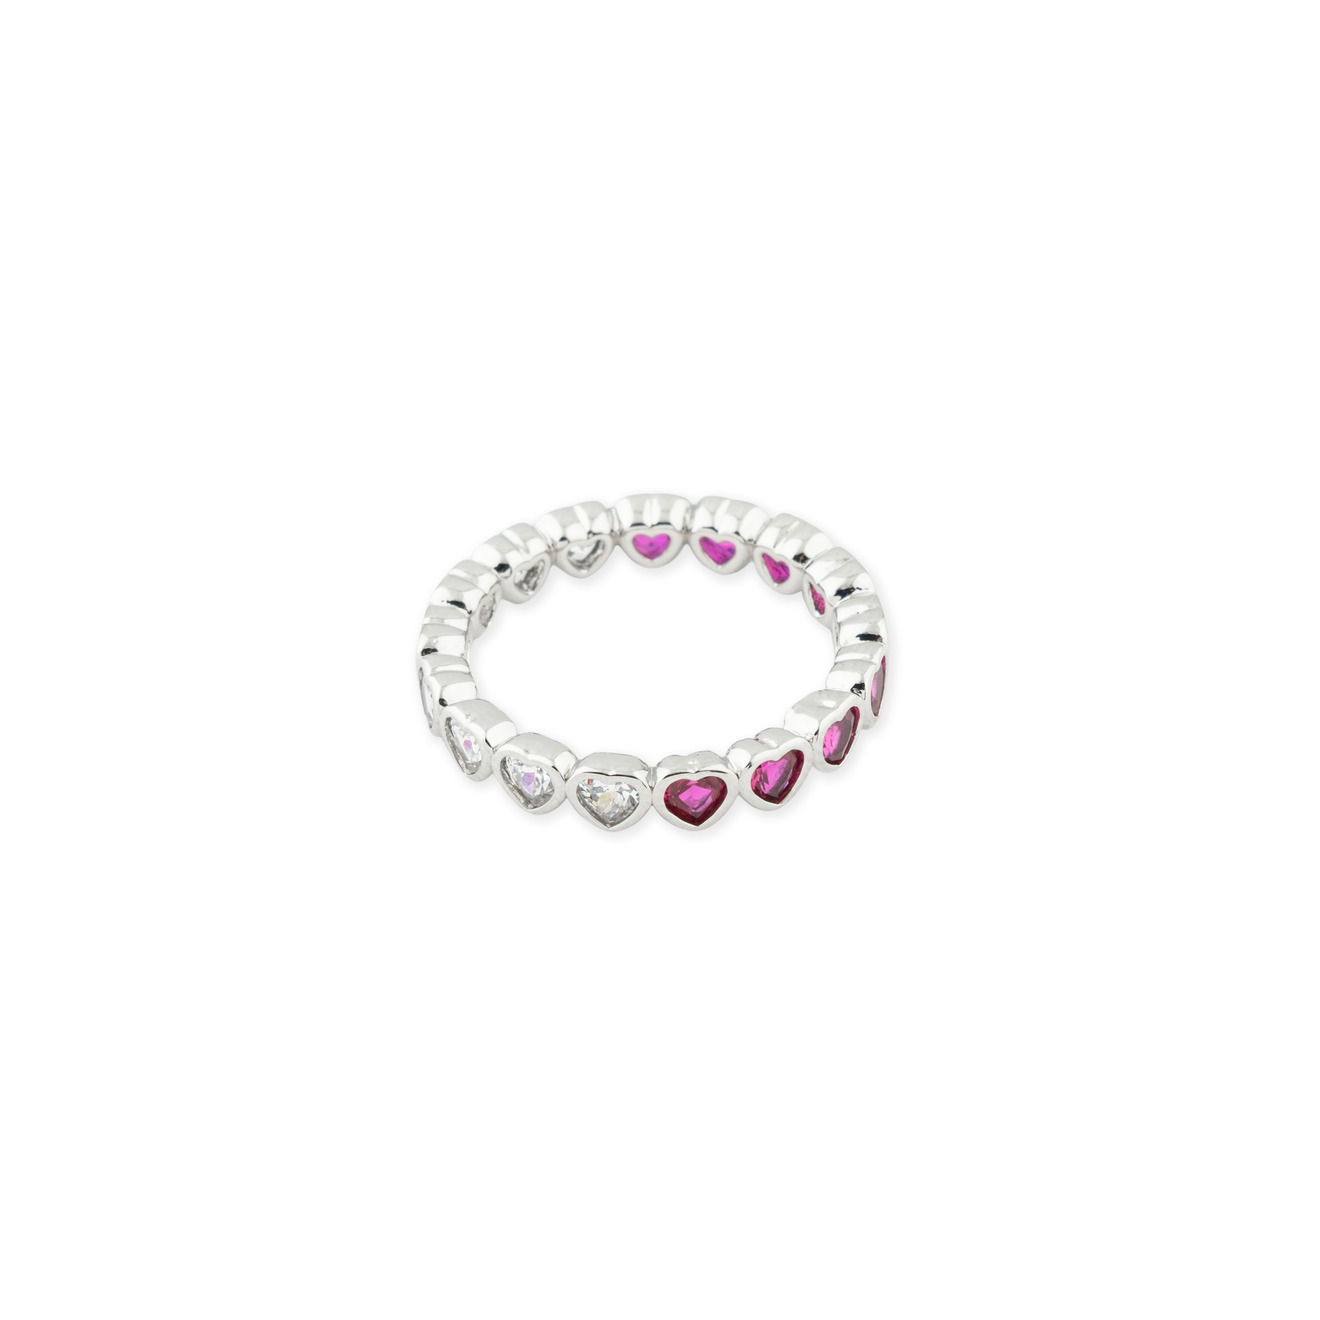 Herald Percy Серебристое кольцо из сердец с белыми и розовыми кристаллами herald percy кольцо с золотистыми кристаллами